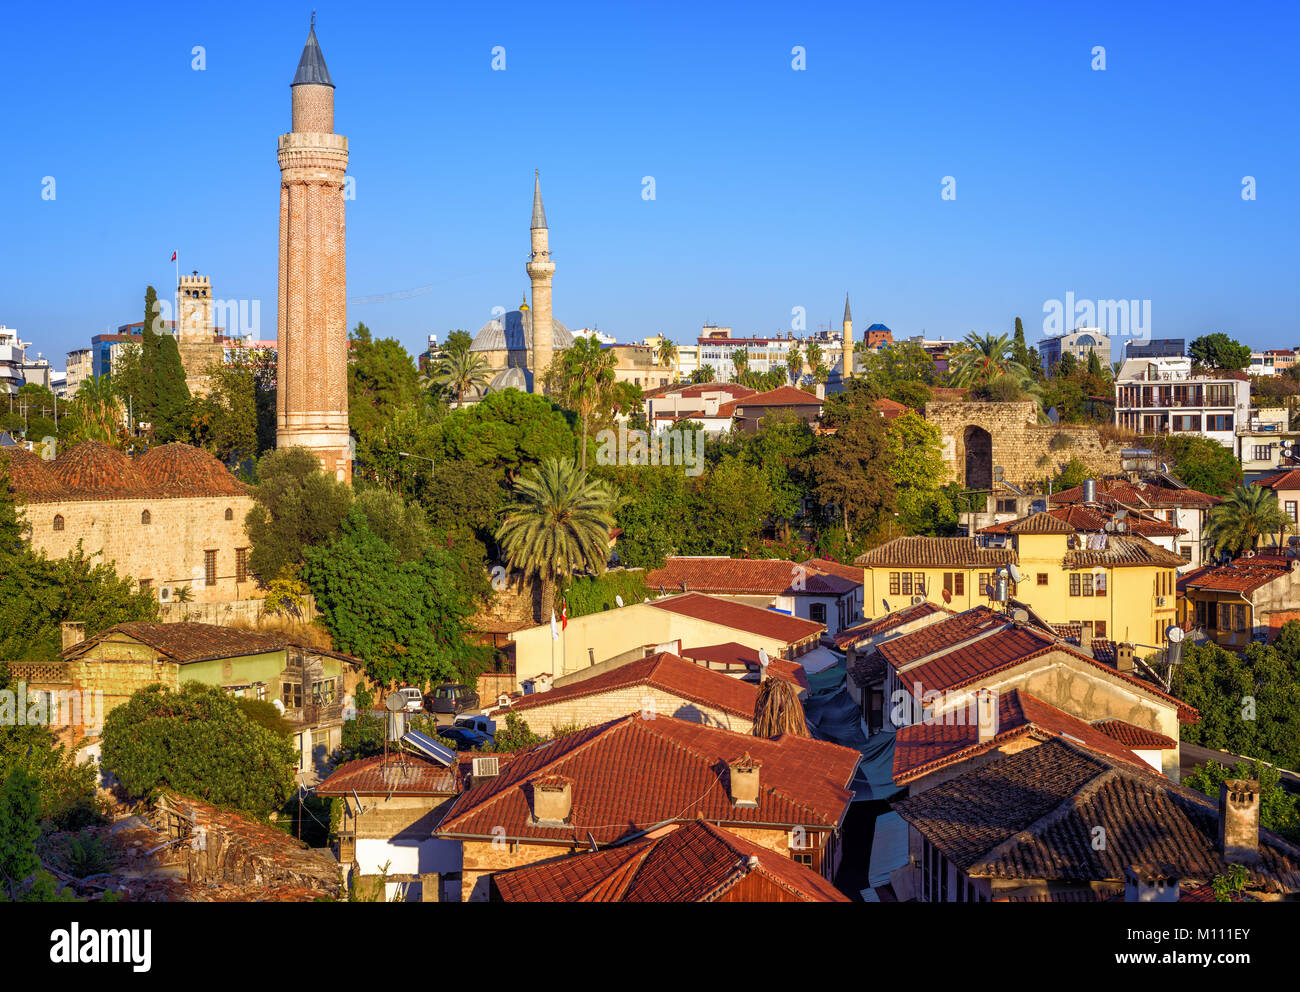 Toits de tuiles rouges de la vieille ville d'Antalya, Turquie, avec Minaret Yivli, Tour de l'horloge et la mosquée Tekeli Mehmet Pasa Banque D'Images